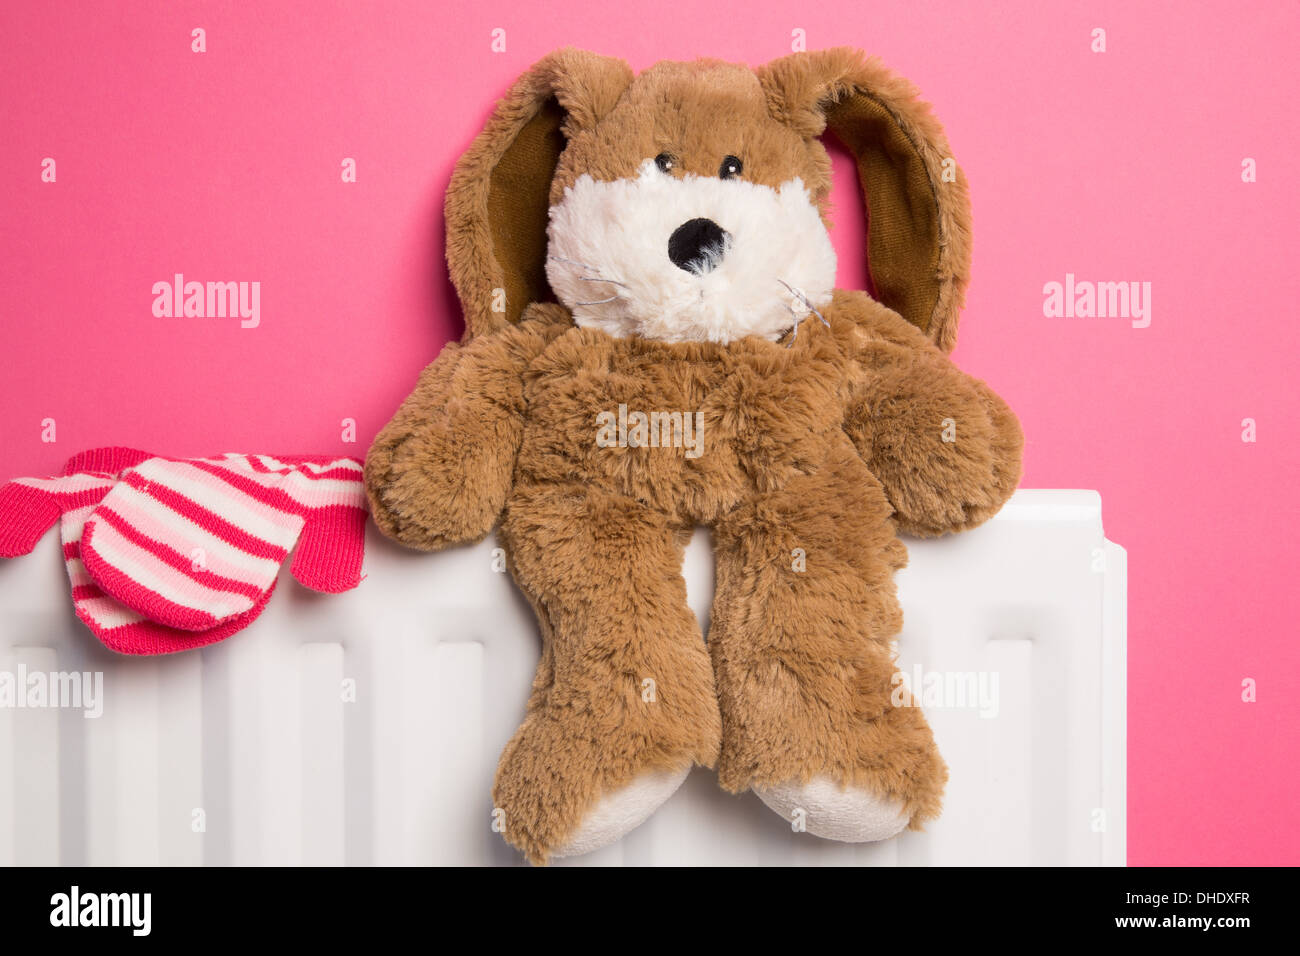 Ein rosa Kinderzimmer mit ein Teddybär und ein paar Handschuhe auf einem Heizkörper platziert. Stockfoto